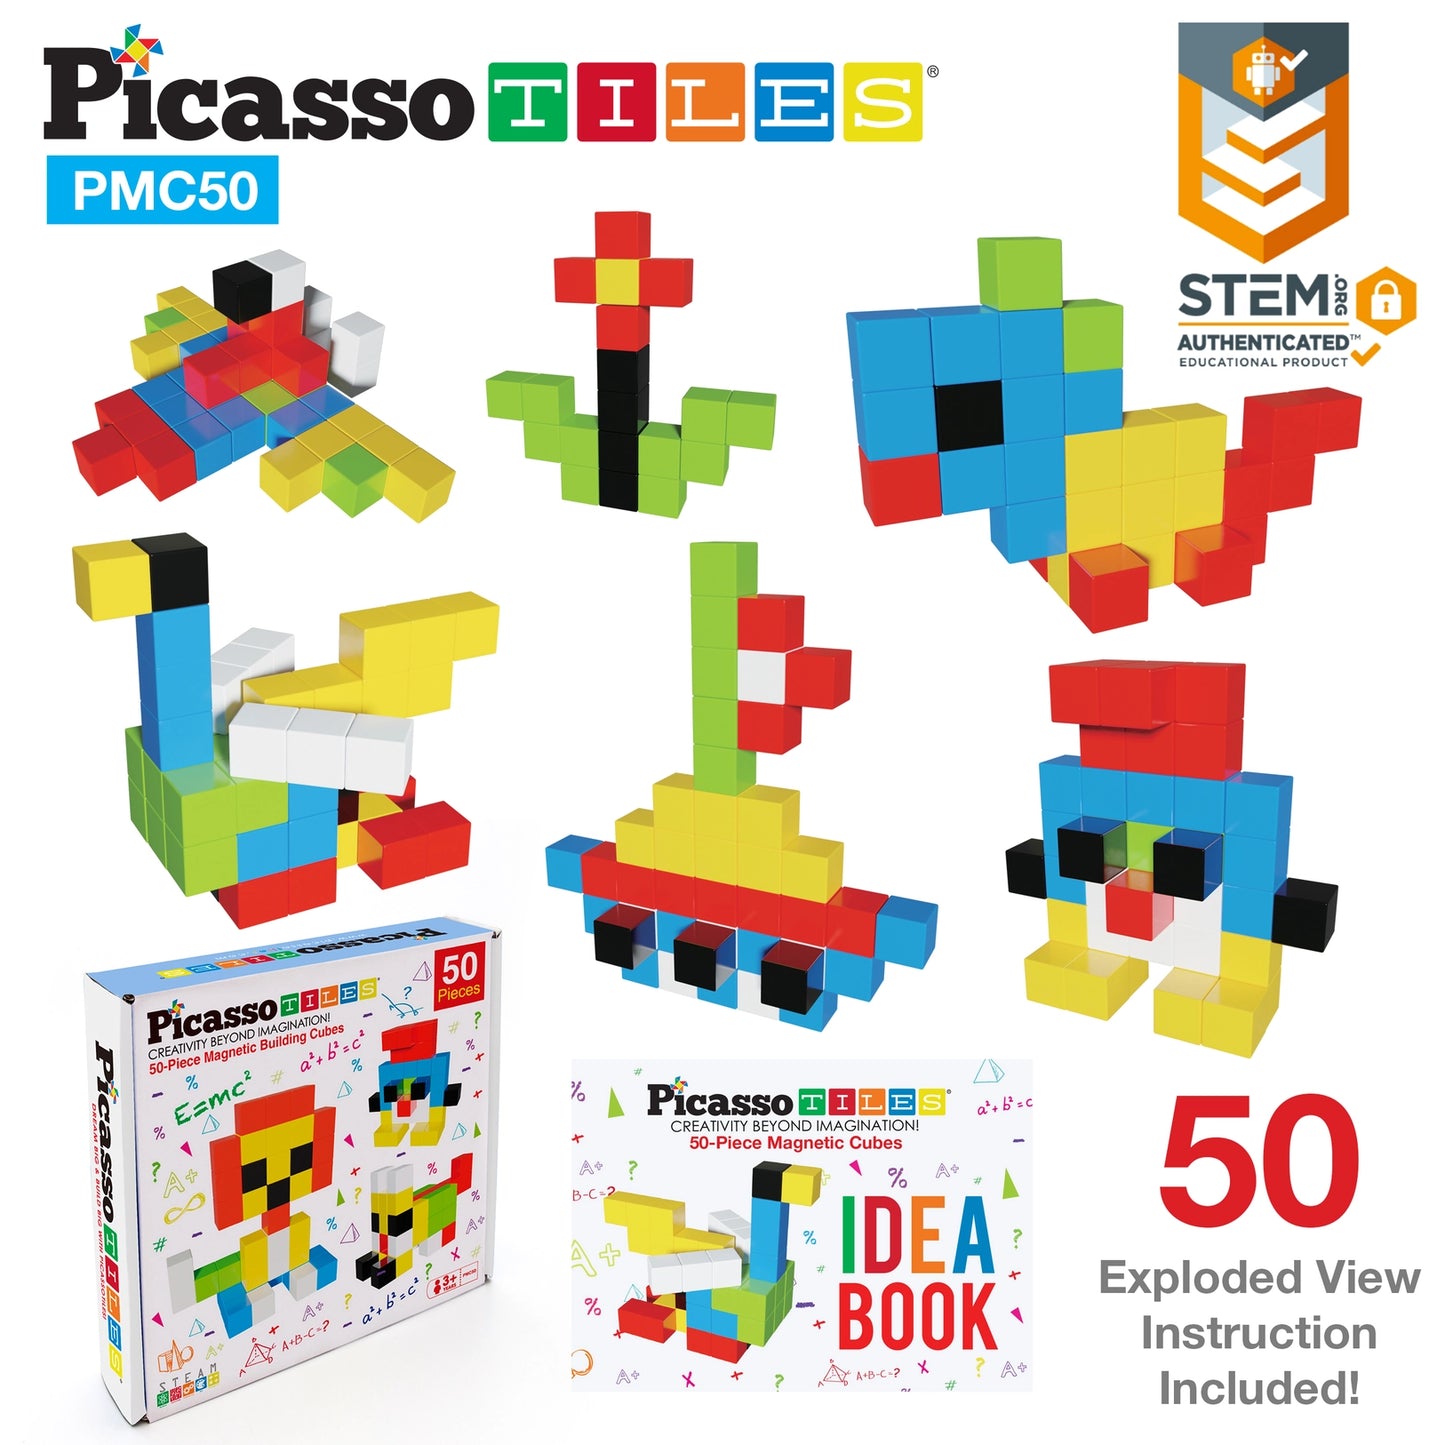 PicassoTiles 50pc 1" Pixel Magnetic Cube Set